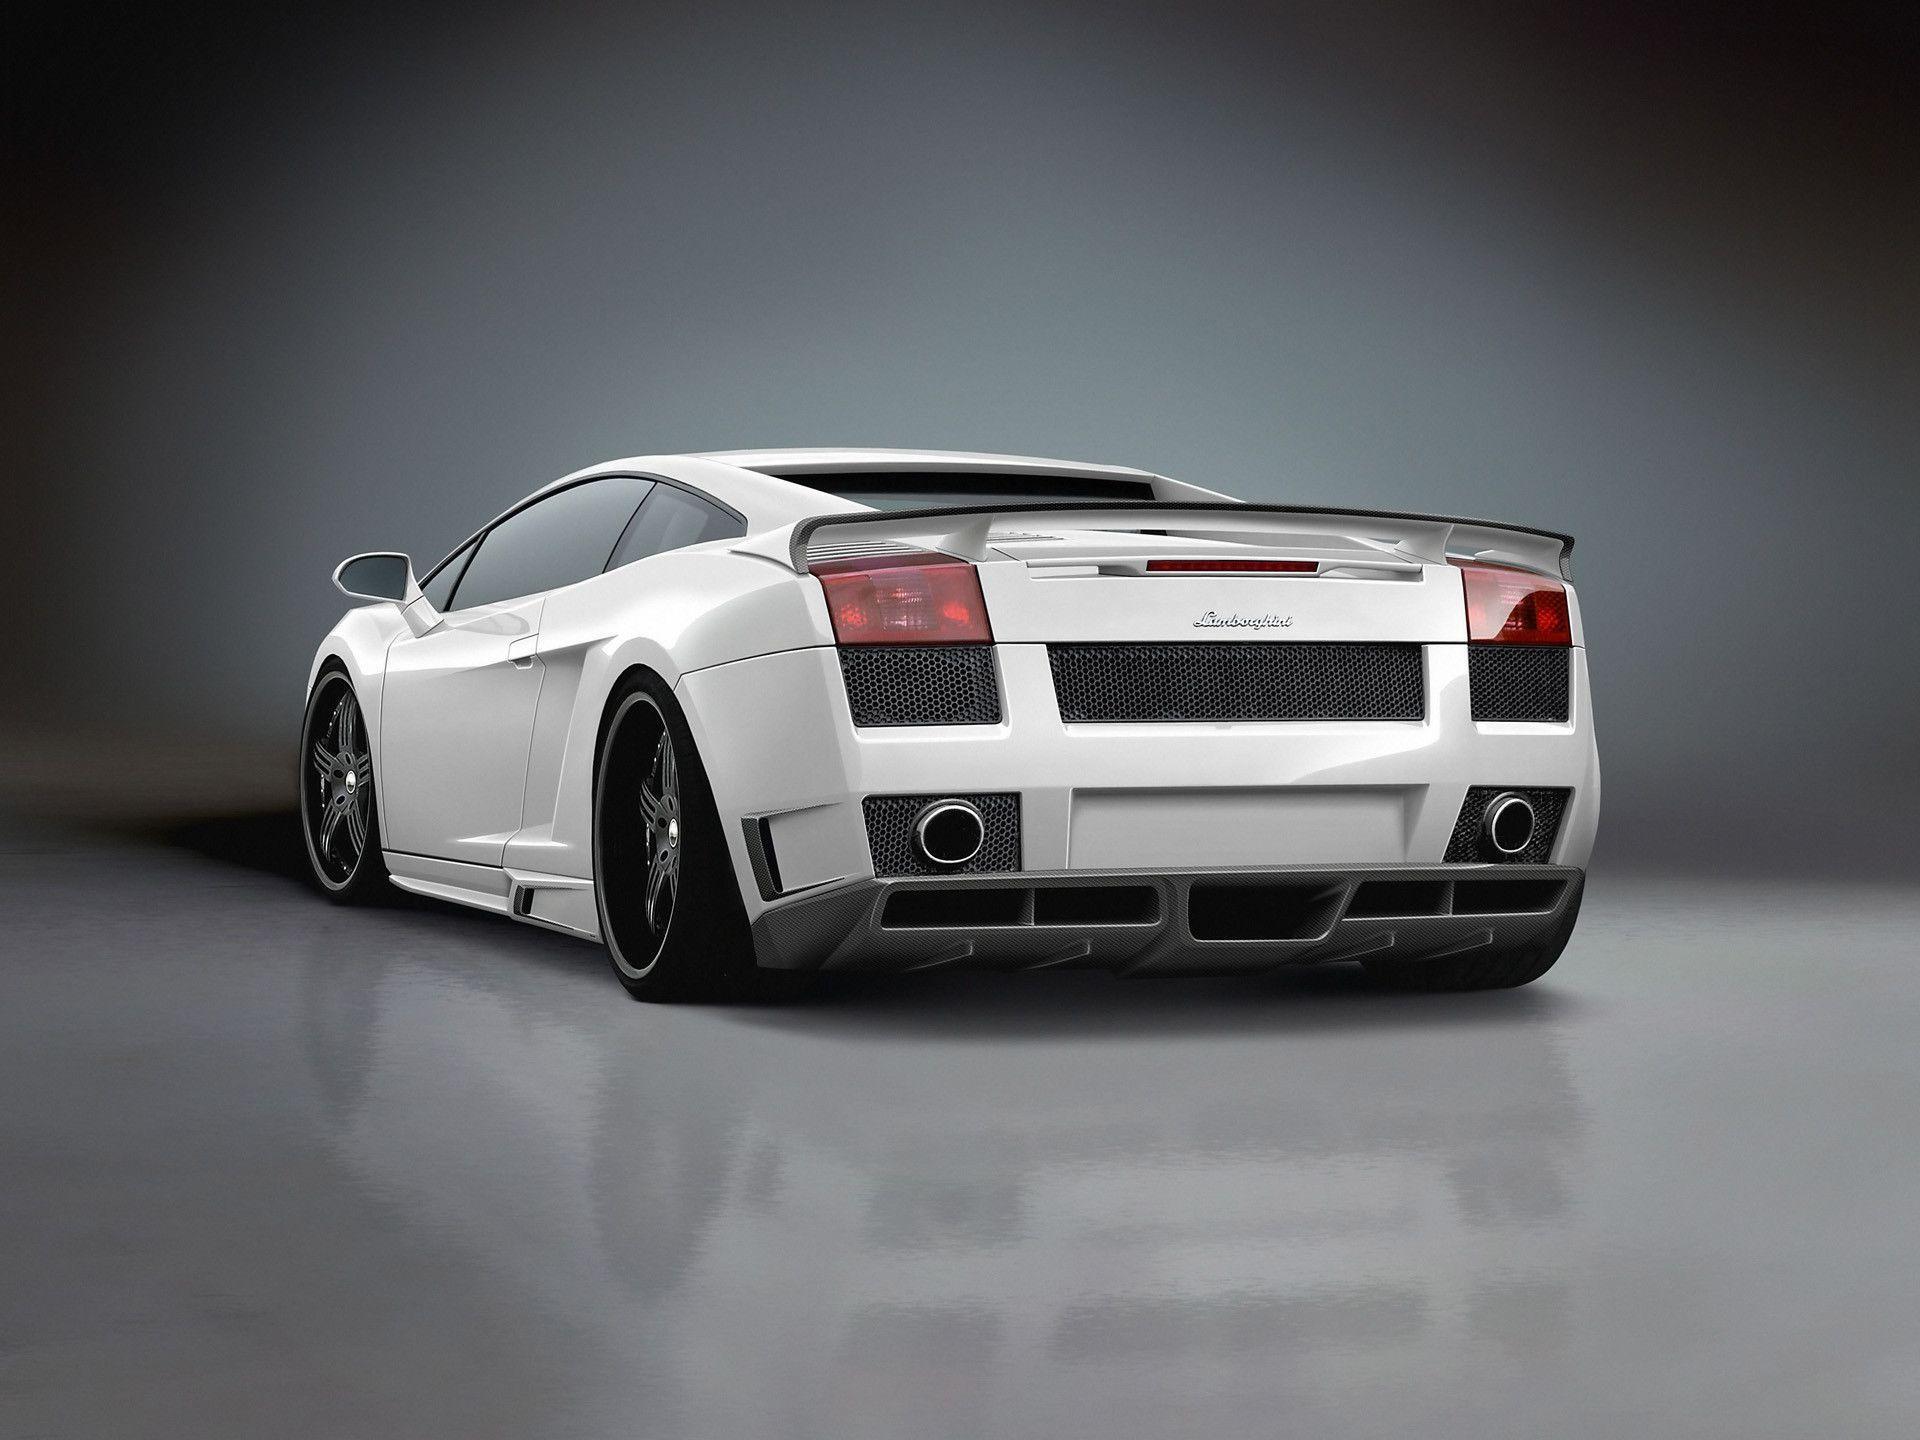 White Lamborghini Gallardo Rear View desktop wallpaper